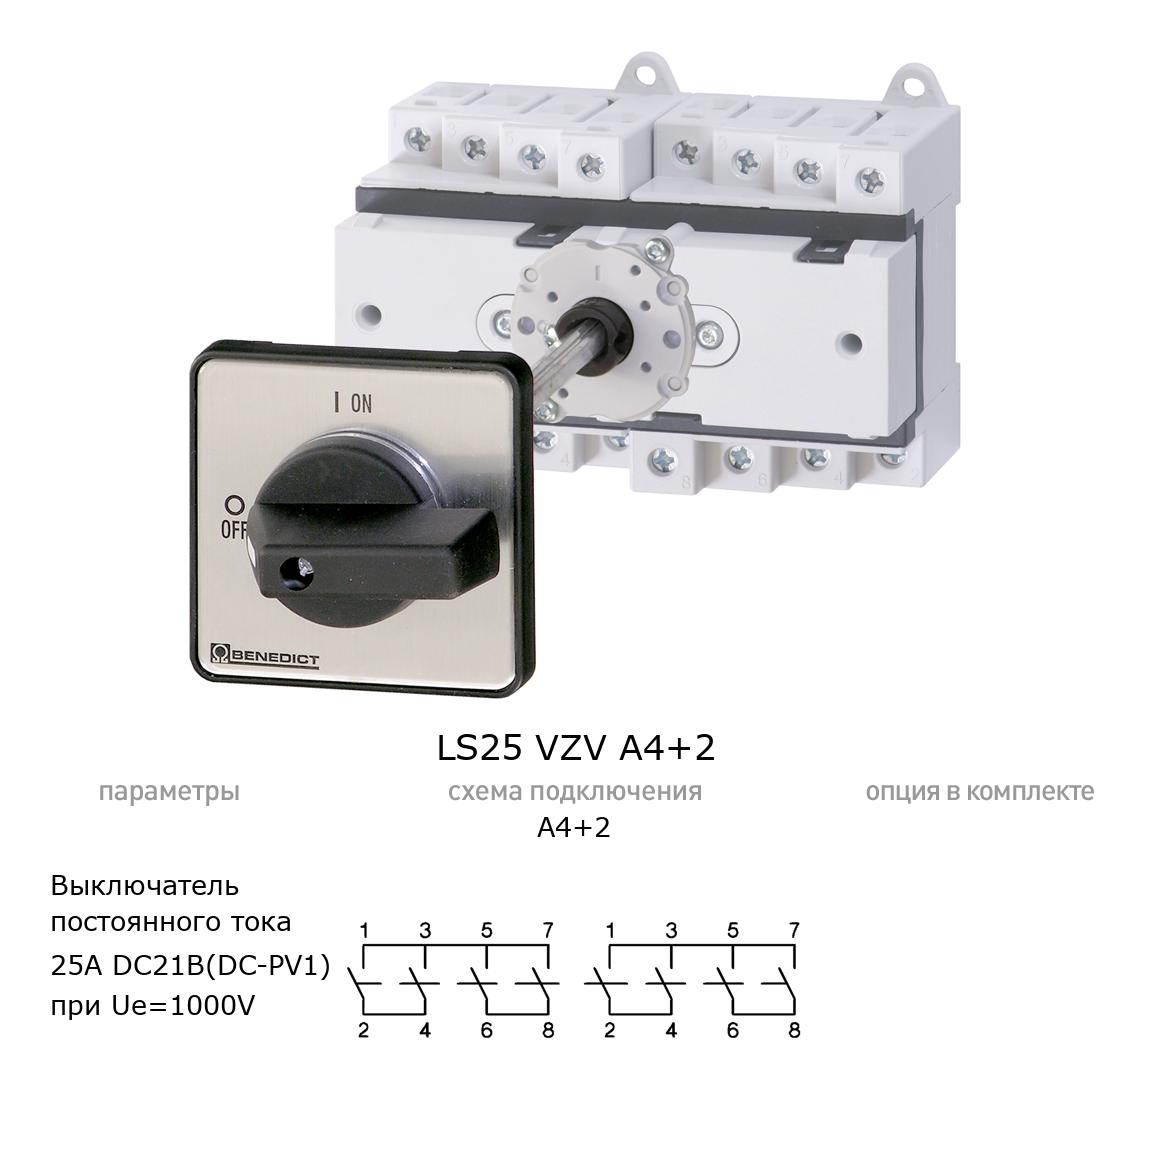 Кулачковый переключатель для постоянного тока (DC) LS25 VZV A4+2 BENEDICT